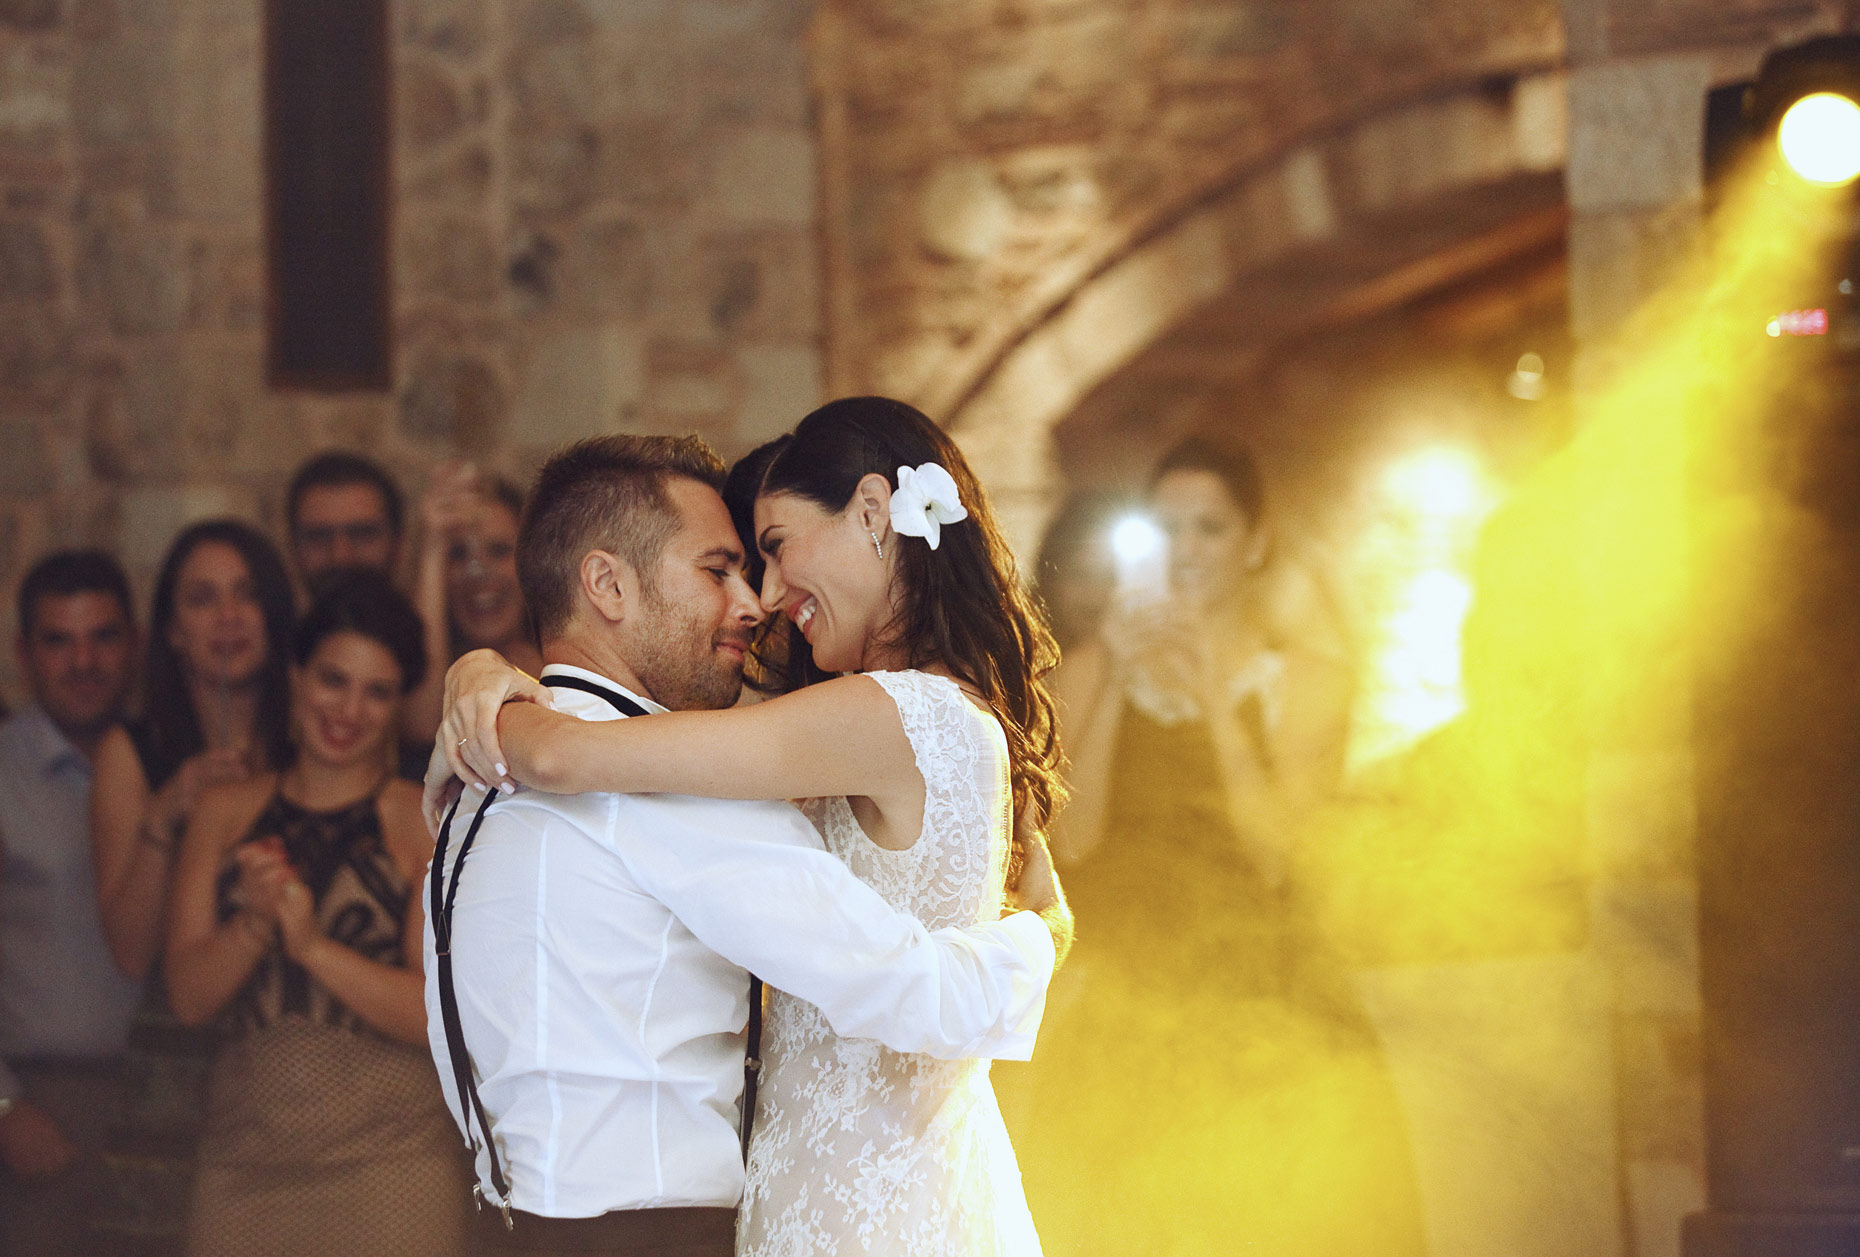 πυργος πετρεζα γαμος | pyrgos petreza wedding